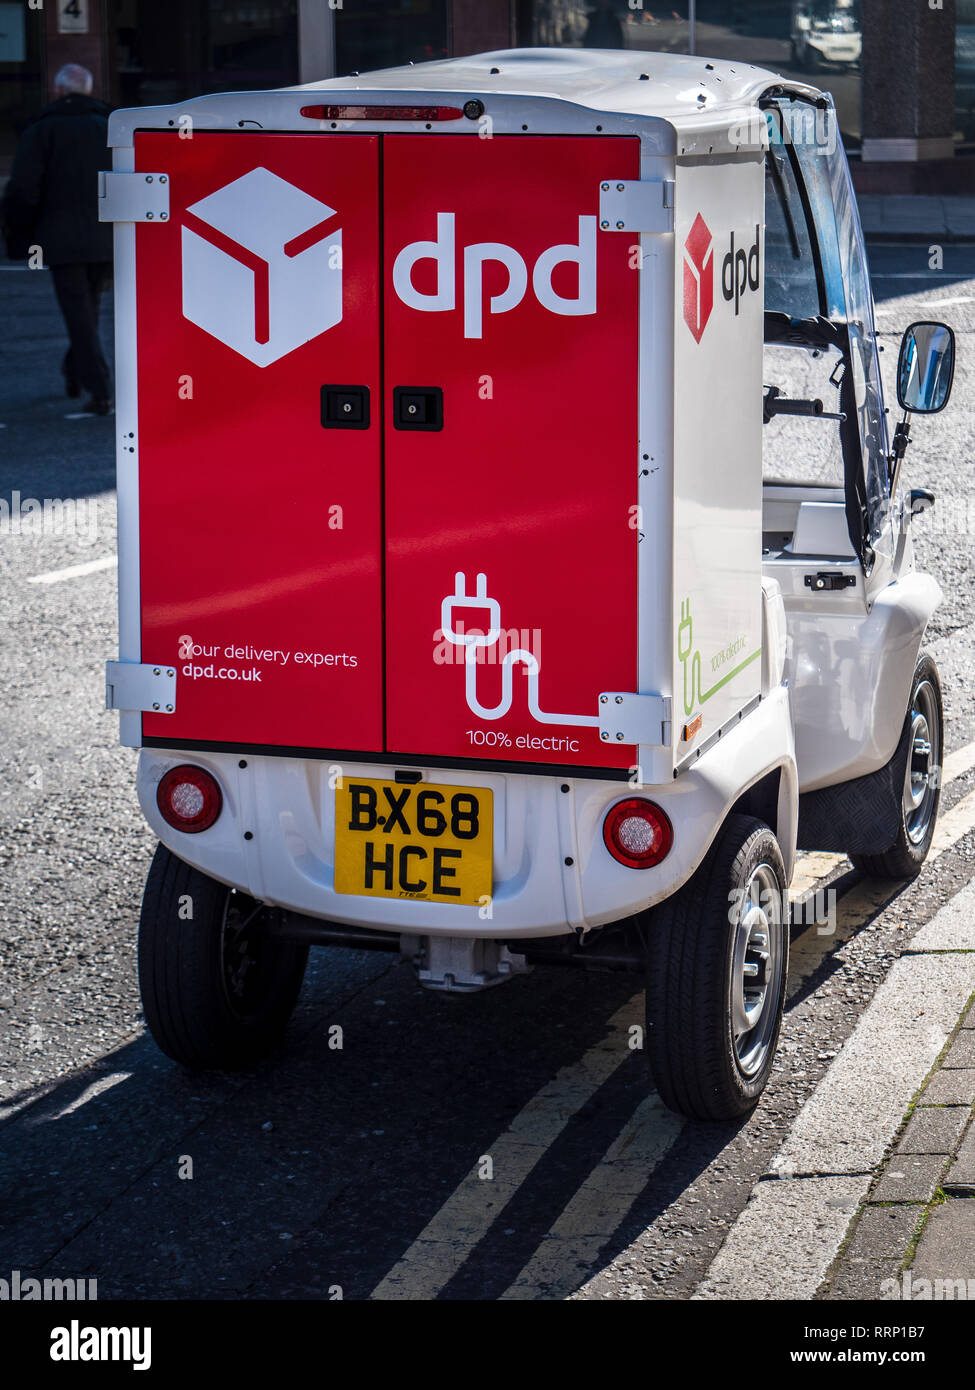 DPD Electric Delivery Vehicle nel centro di Londra. DPD è un servizio di consegna e corriere. Eco Delivery Londra. Foto Stock